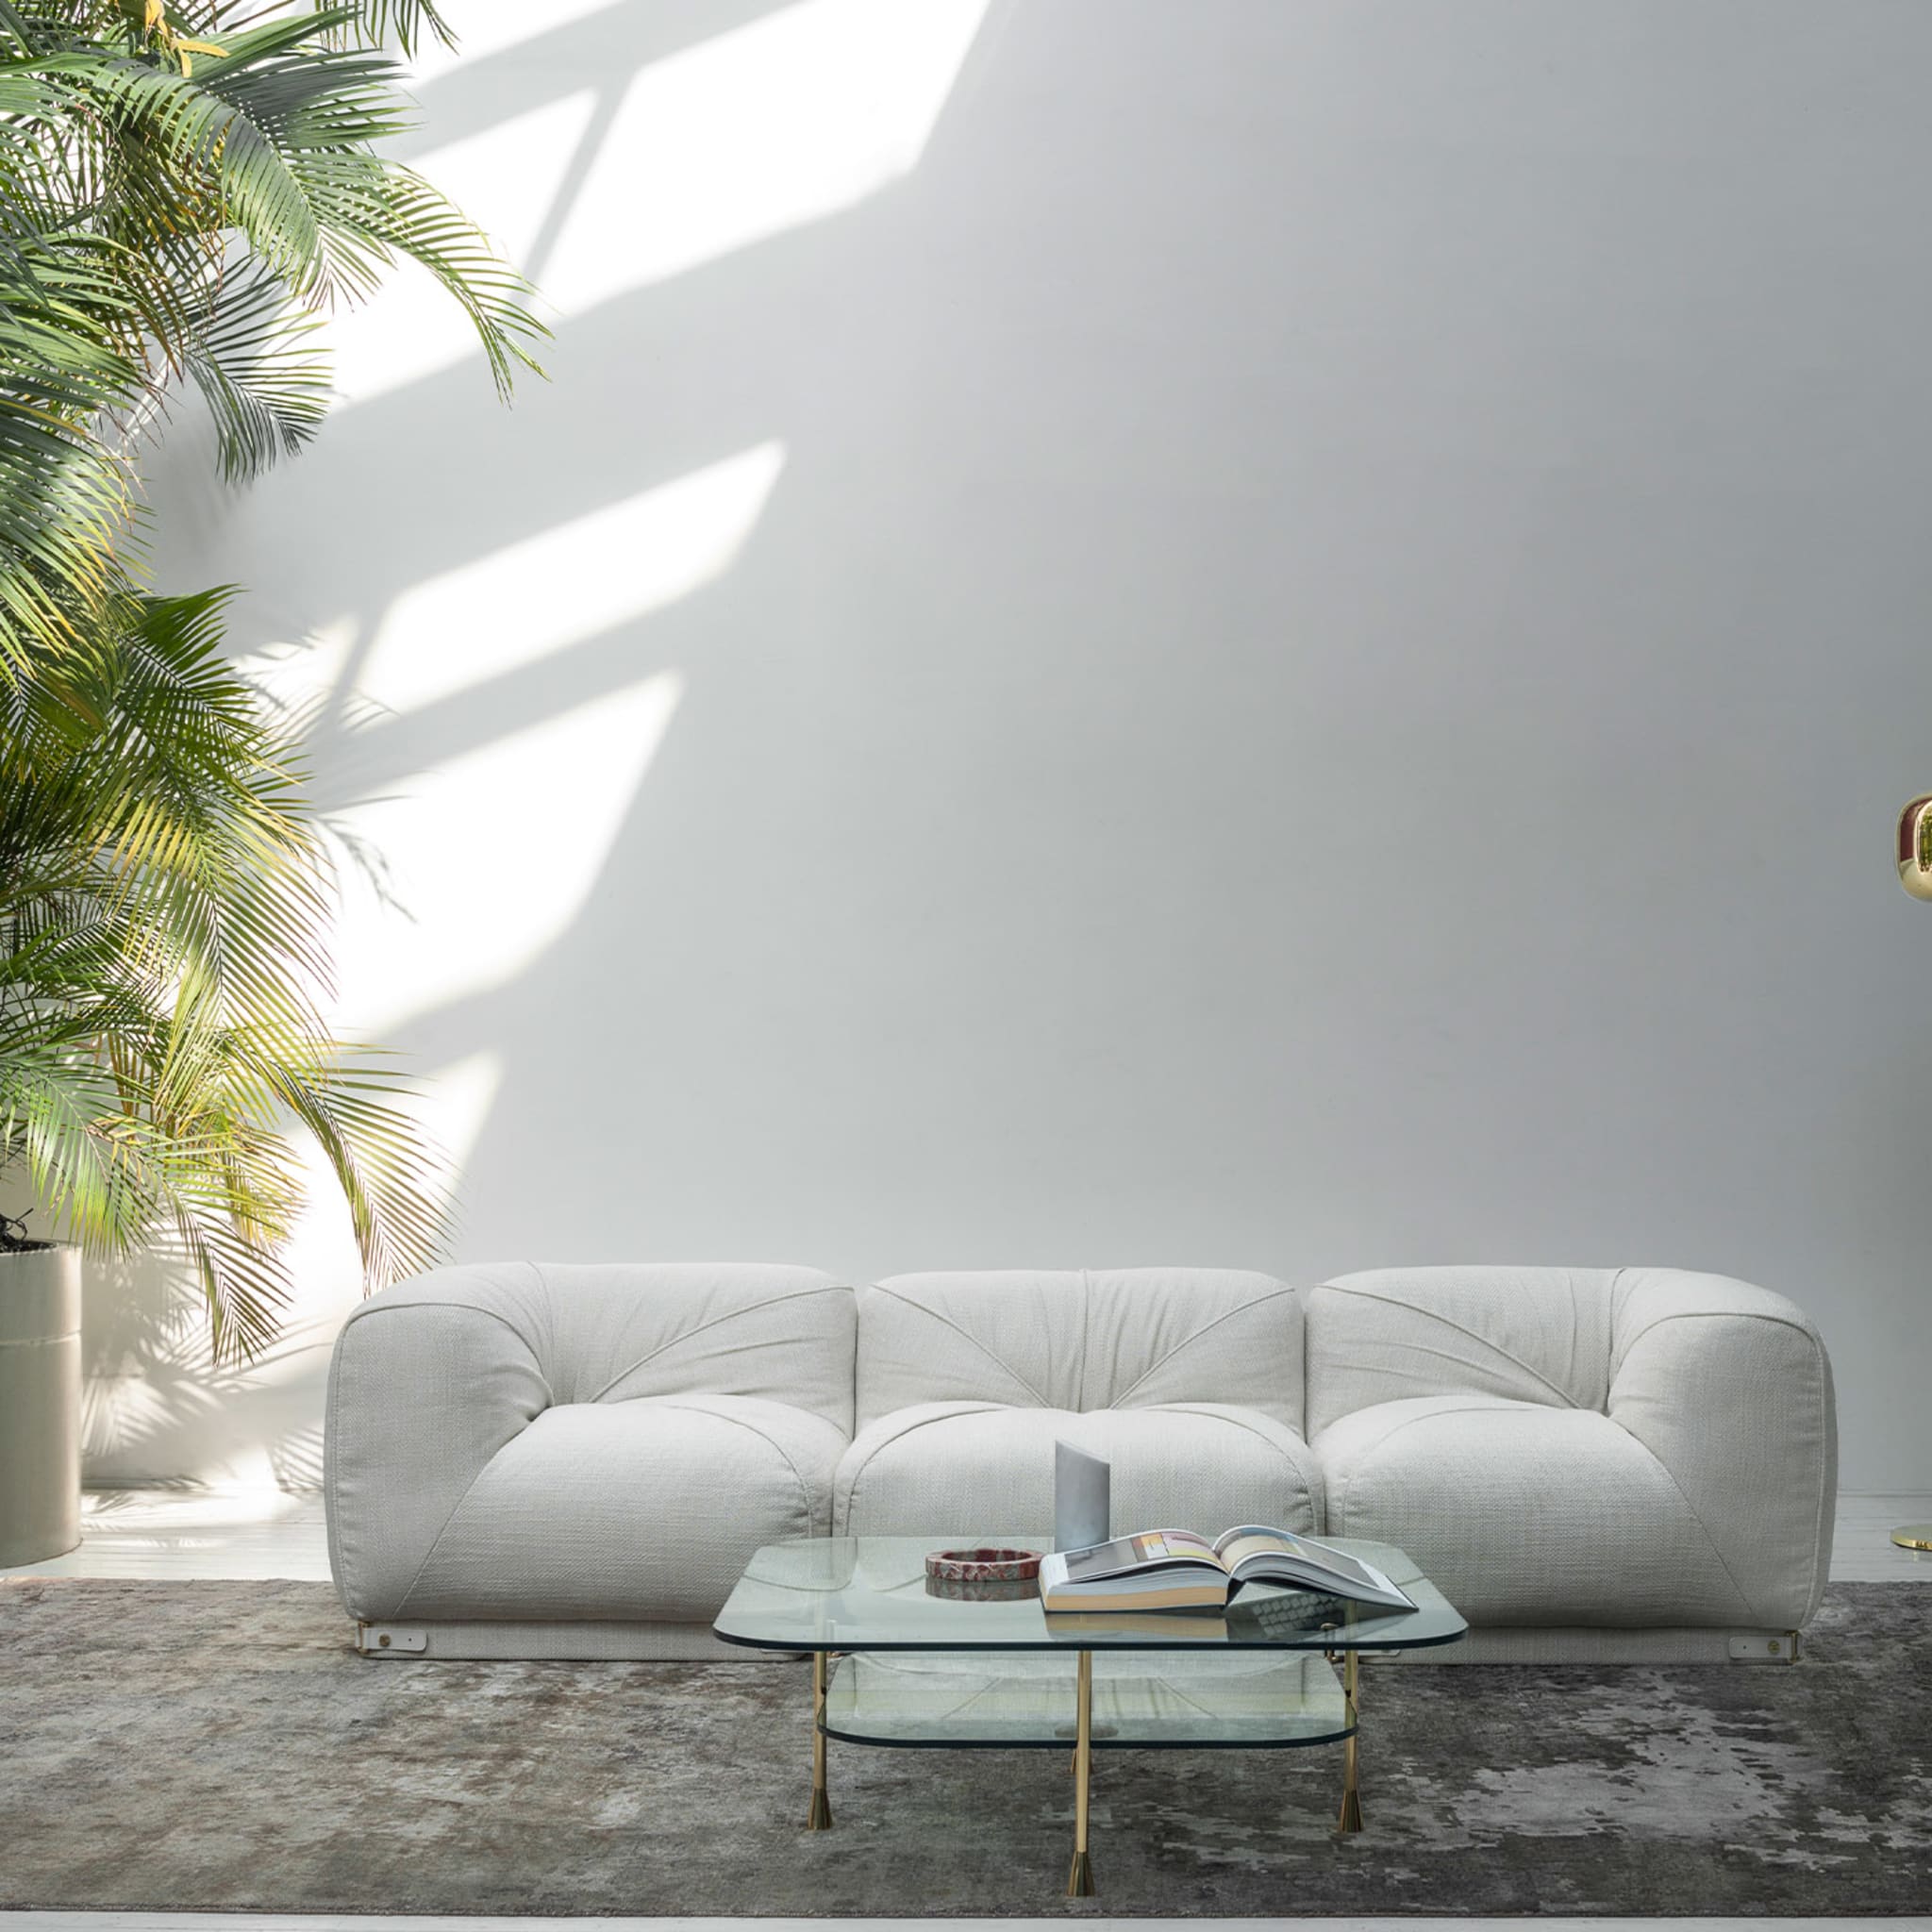 Leisure 3-Seater White Sofa by Lorenza Bozzoli - Alternative view 4